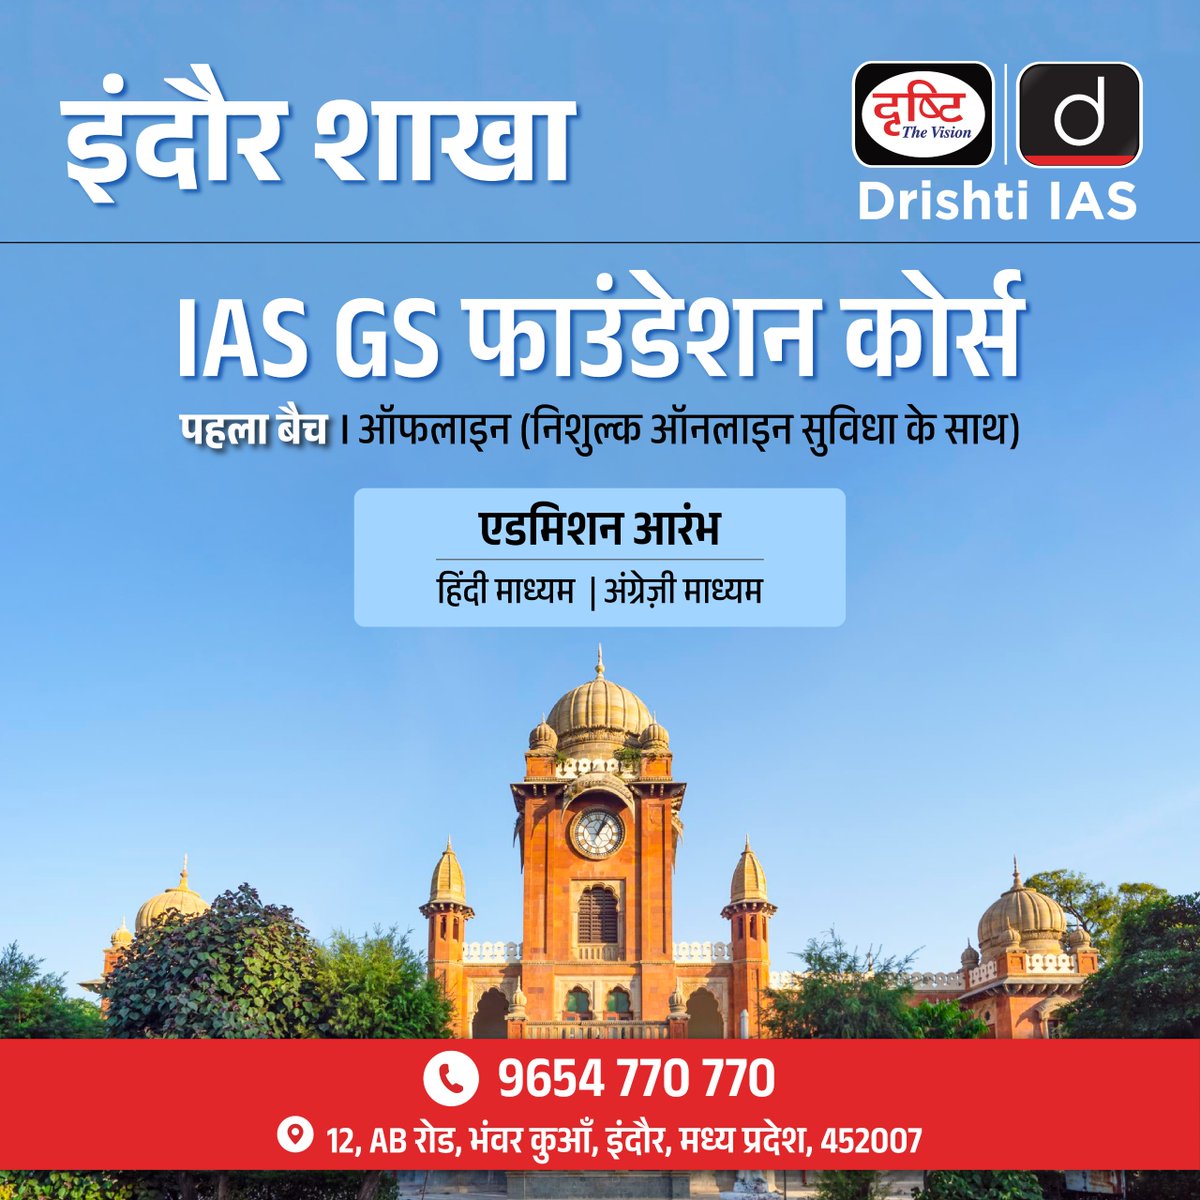 इंदौर शाखा पर- . IAS GS फाउंडेशन बैच . ऑफलाइन बैच में एडमिशन के लिये रजिस्ट्रेशन फॉर्म का लिंक: drishti.xyz/GSF-Offline-Re… . संपर्क करें - 9654-770-770 #IAS #DrishtiIAS #GSfoundation #offlineclasses #Indore #GeneralStudies #DrishtiIASindore